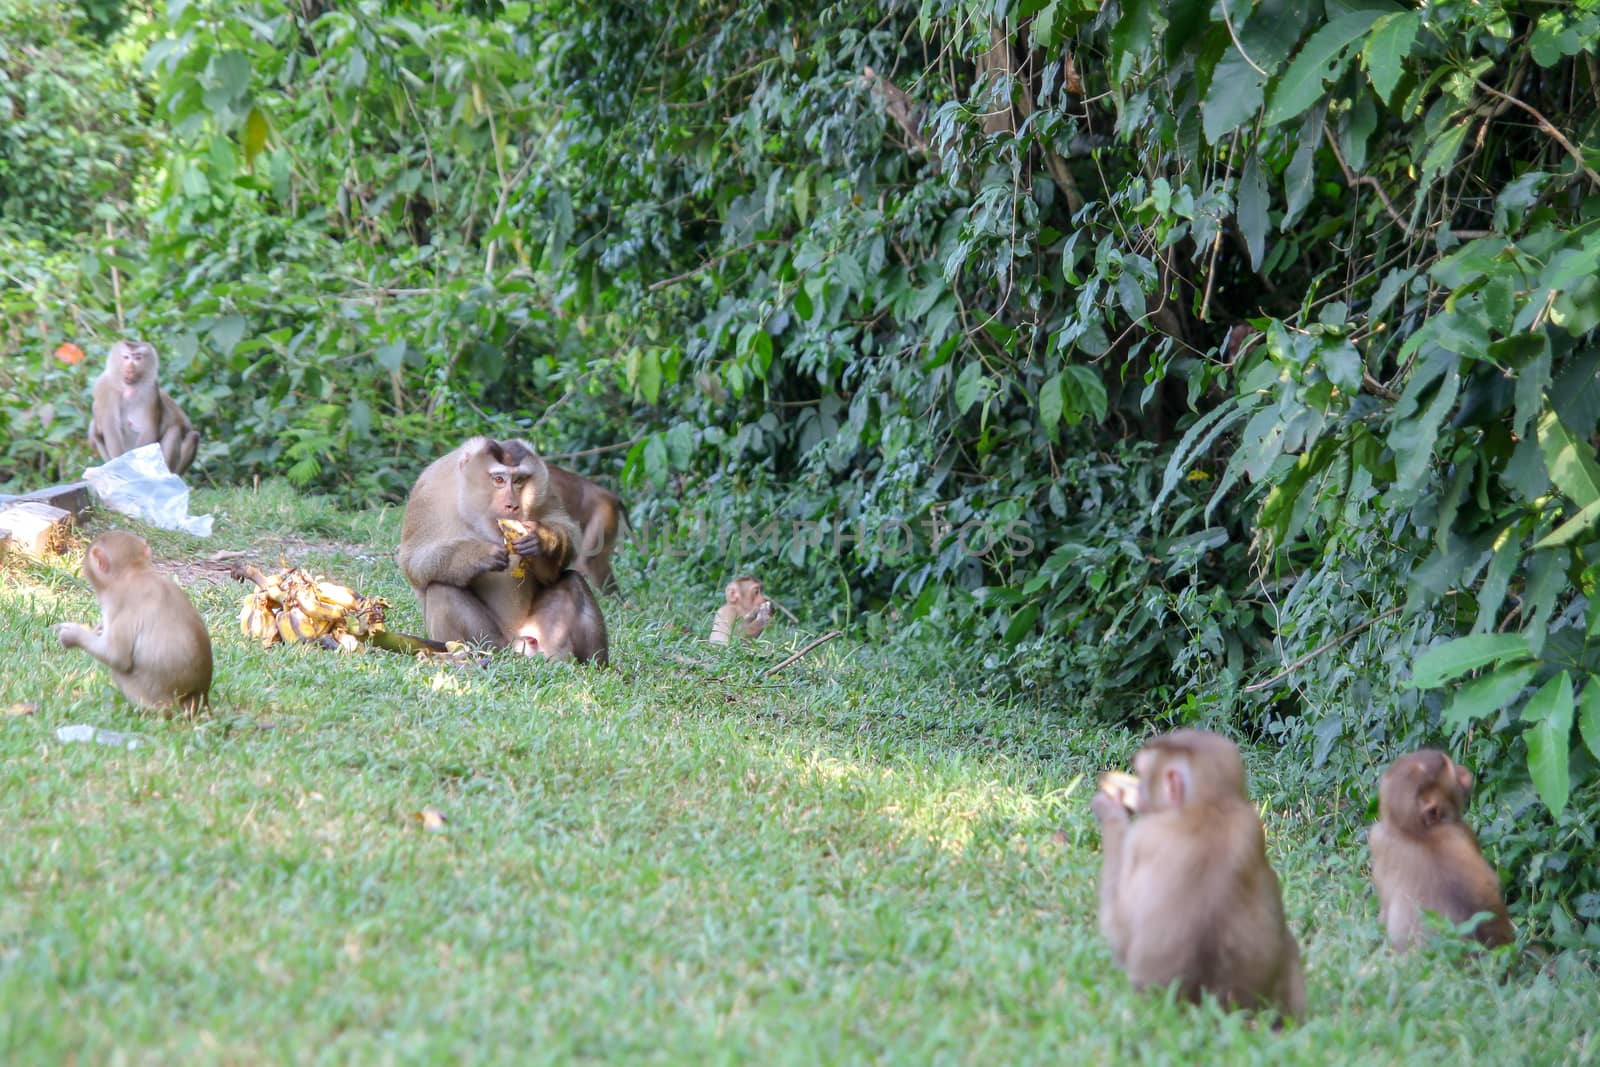 Big monkey eat banana at center group .